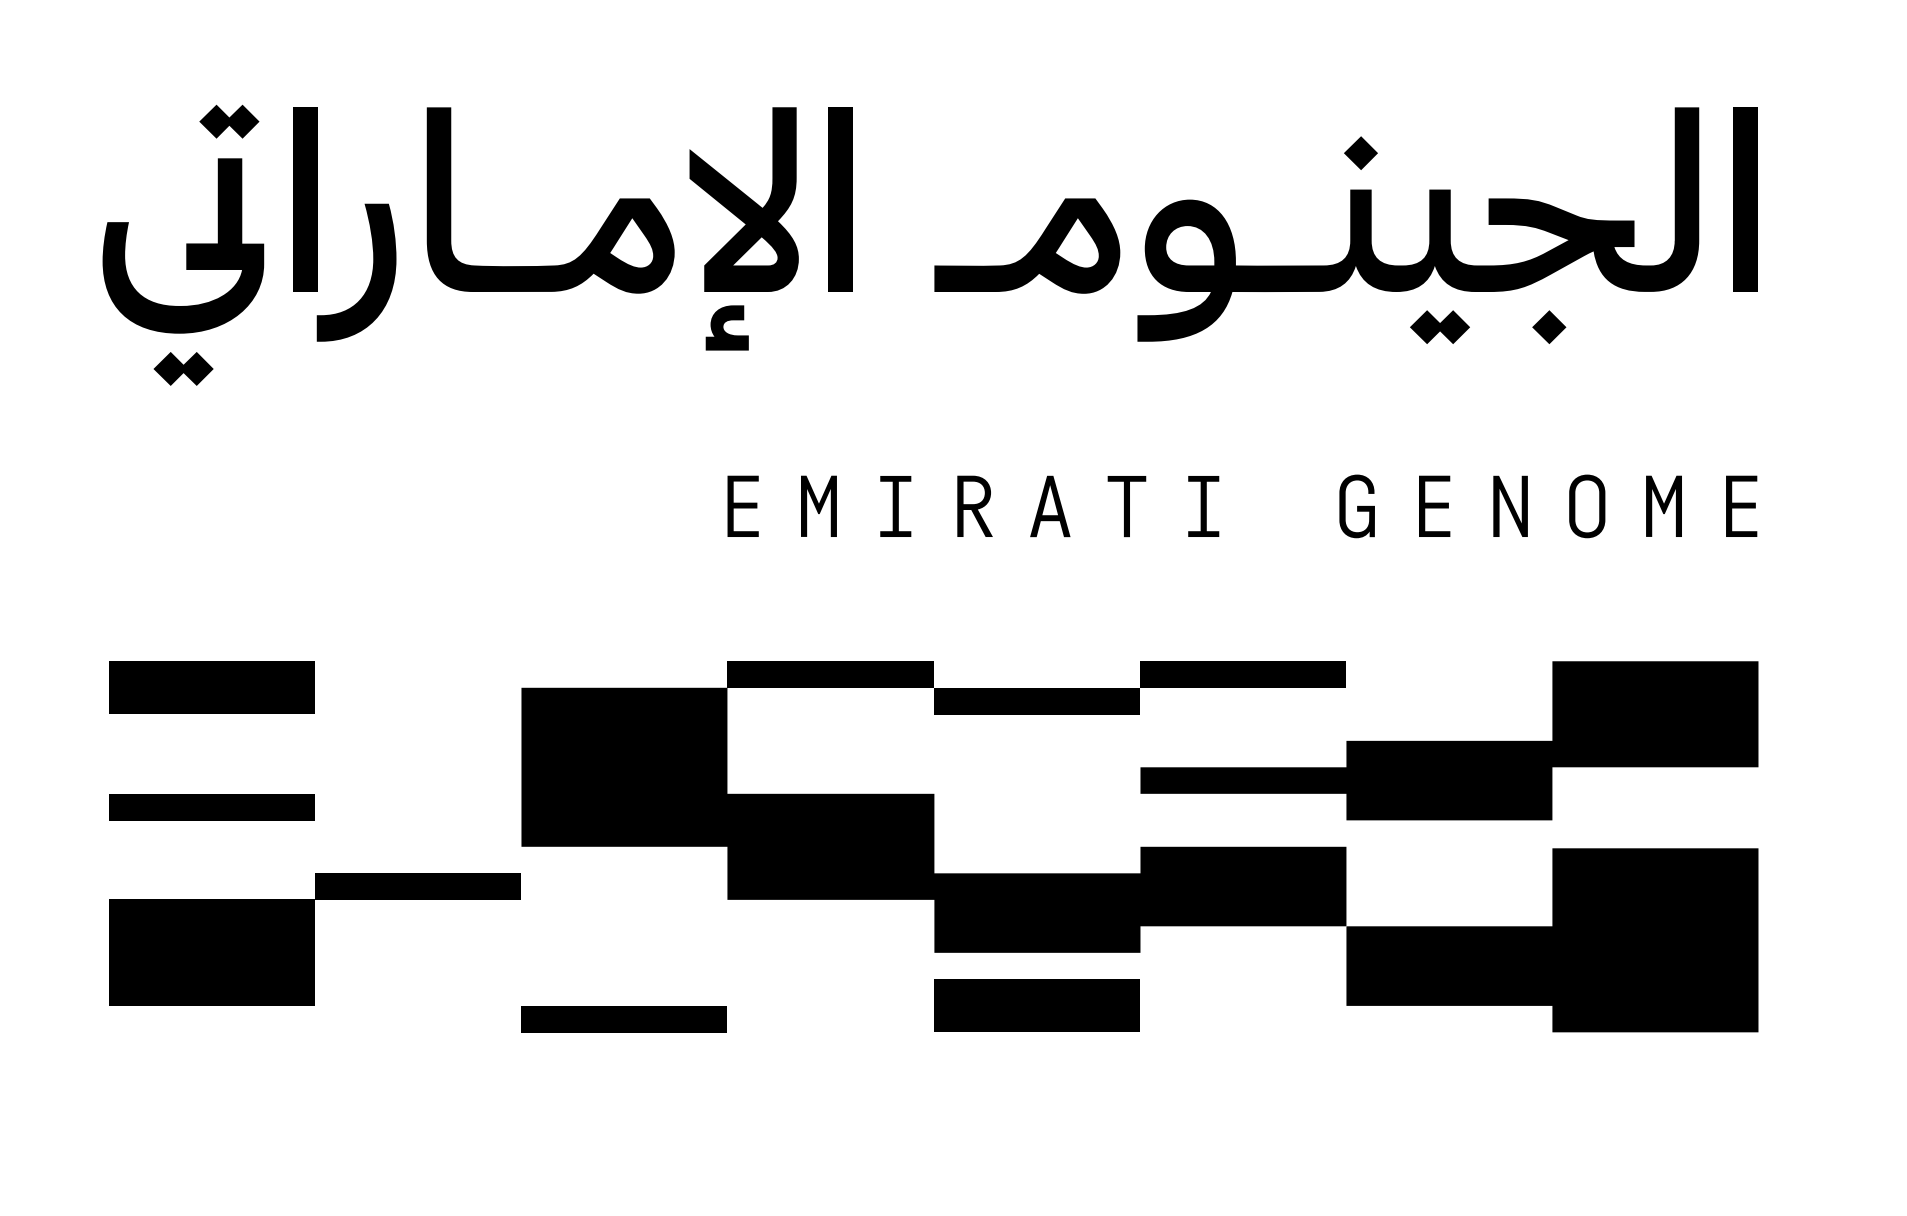 وزارة الصحة ووقاية المجتمع تدعو إلى مشاركة وطنية واسعة في برنامج الجينوم الإماراتي